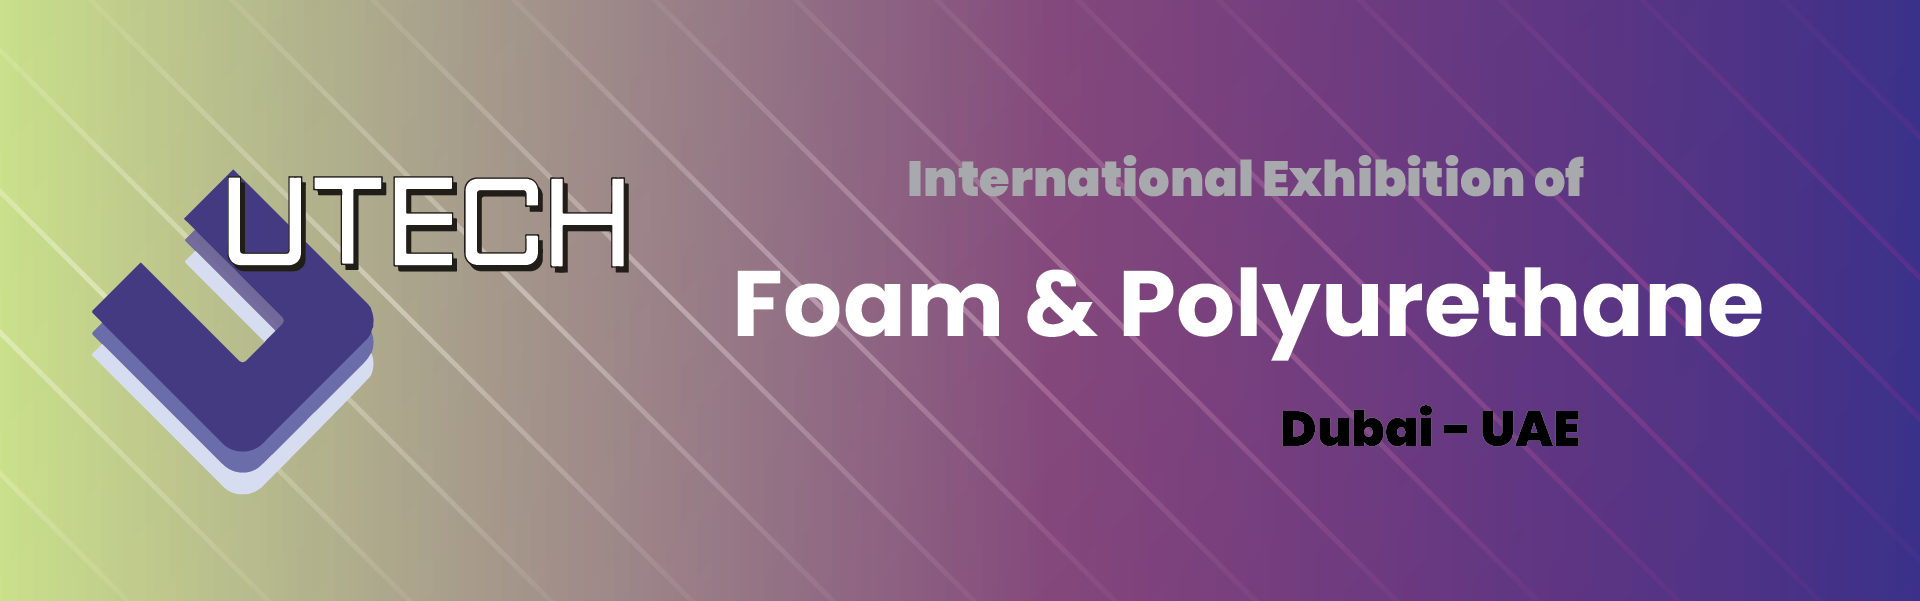 Foam and Polyurethane Exhibition Dubai United Arab Emirates